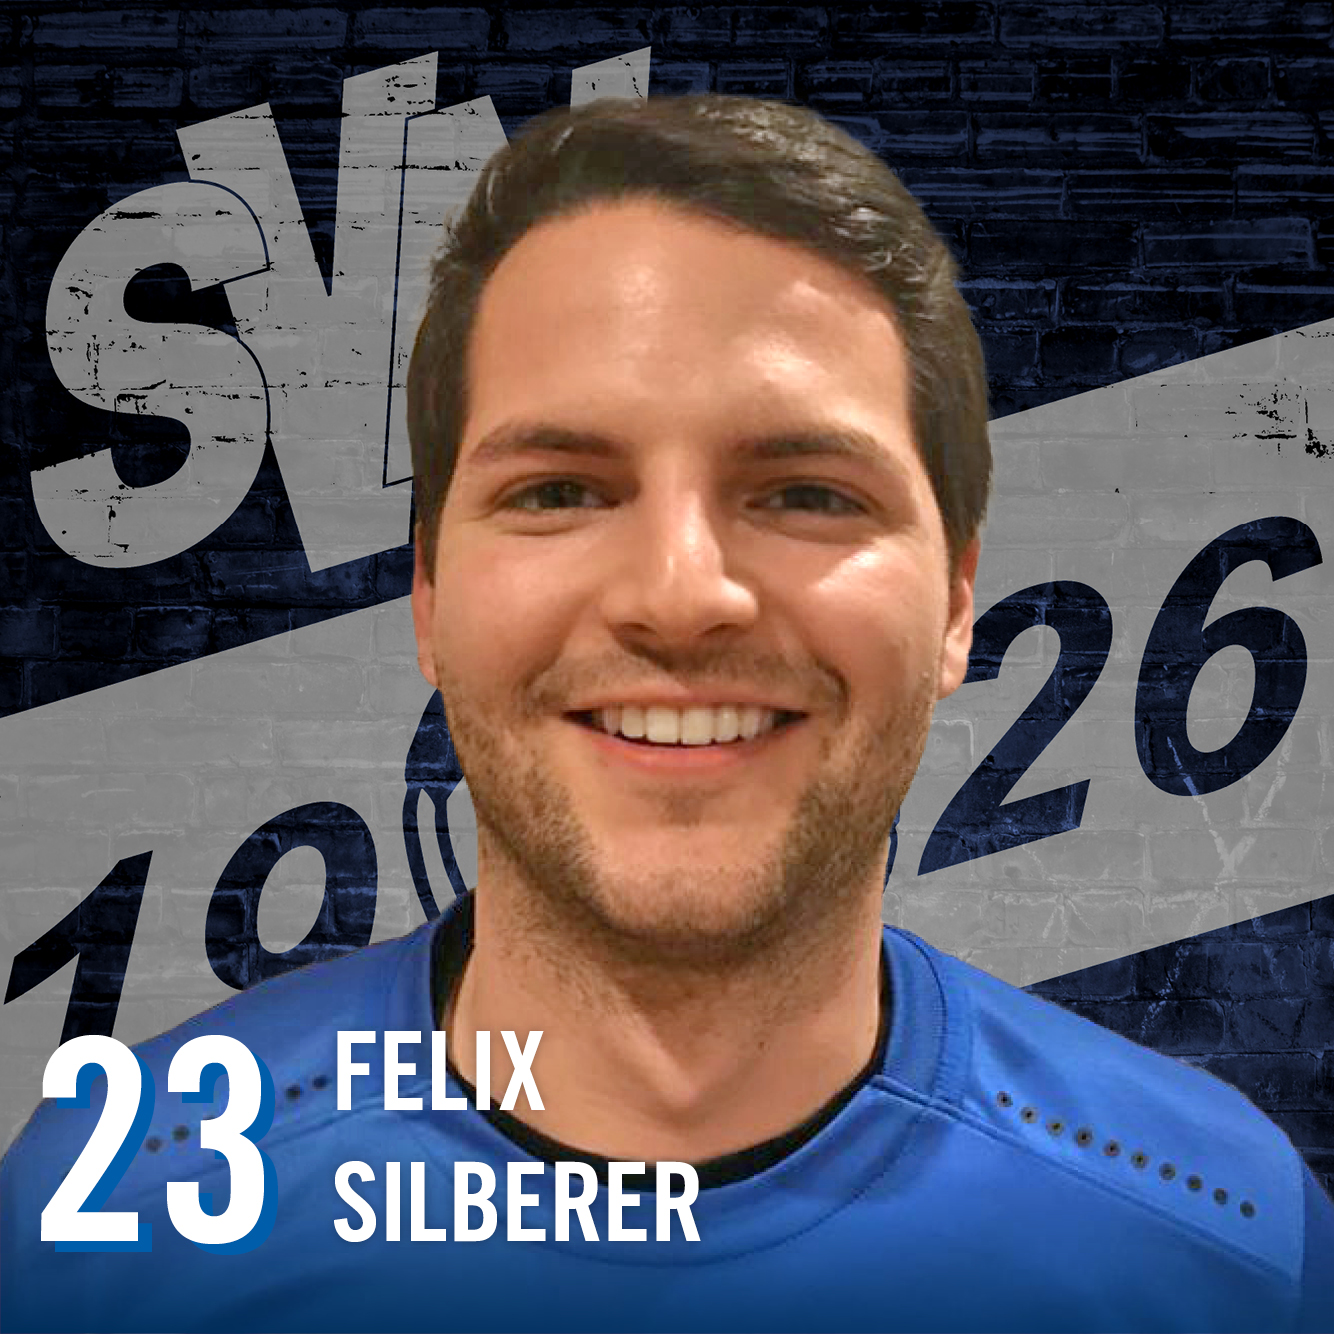 Felix Siberer